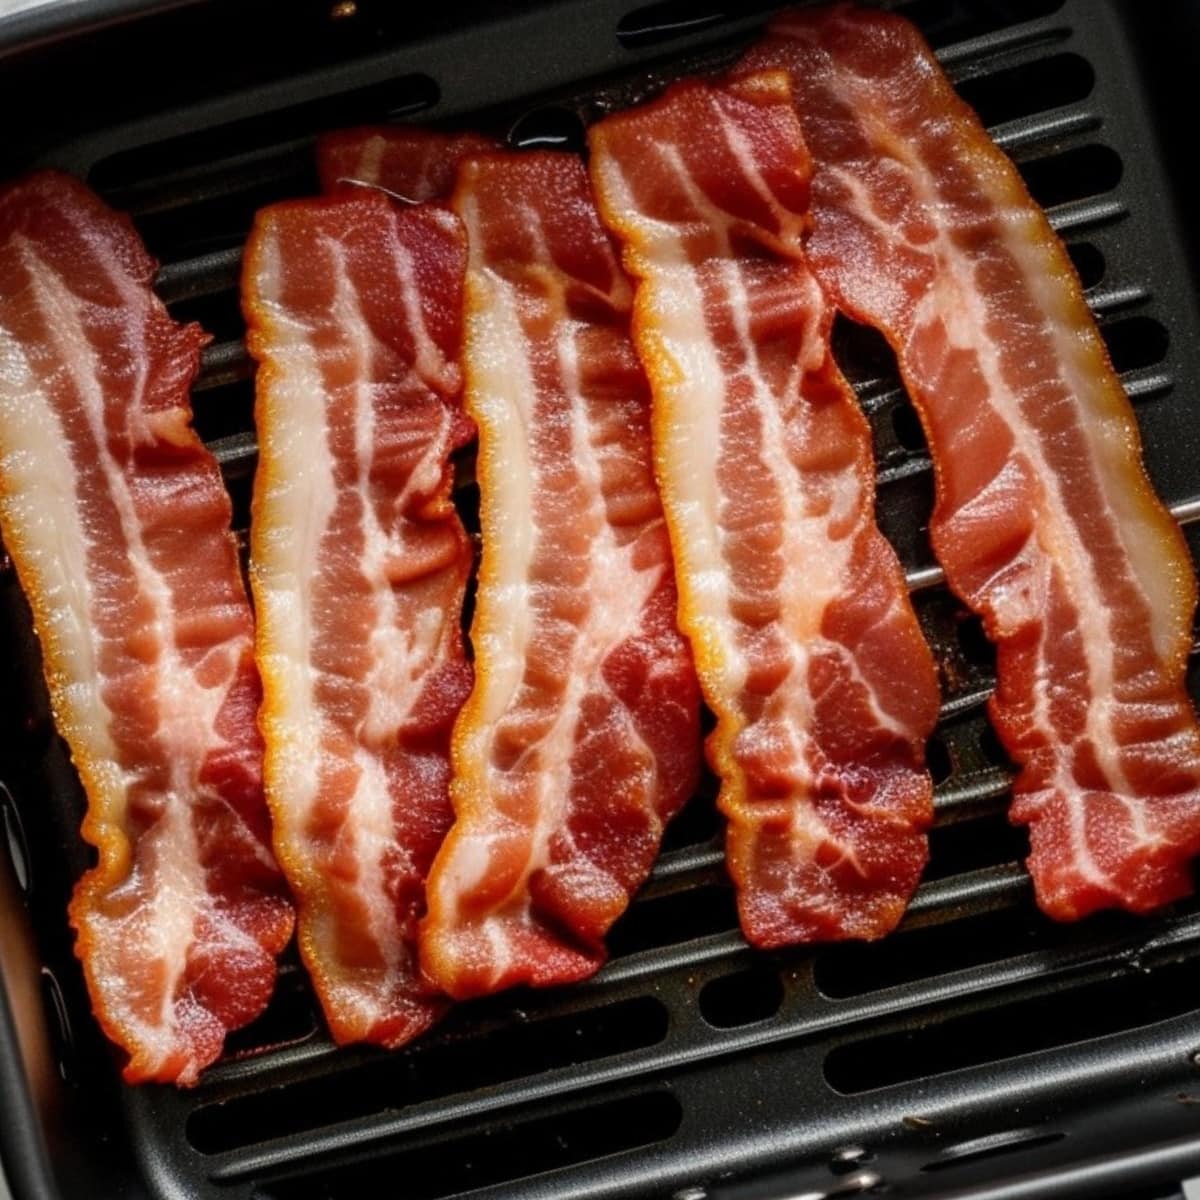 Turkey bacon strips in air fryer basket. 